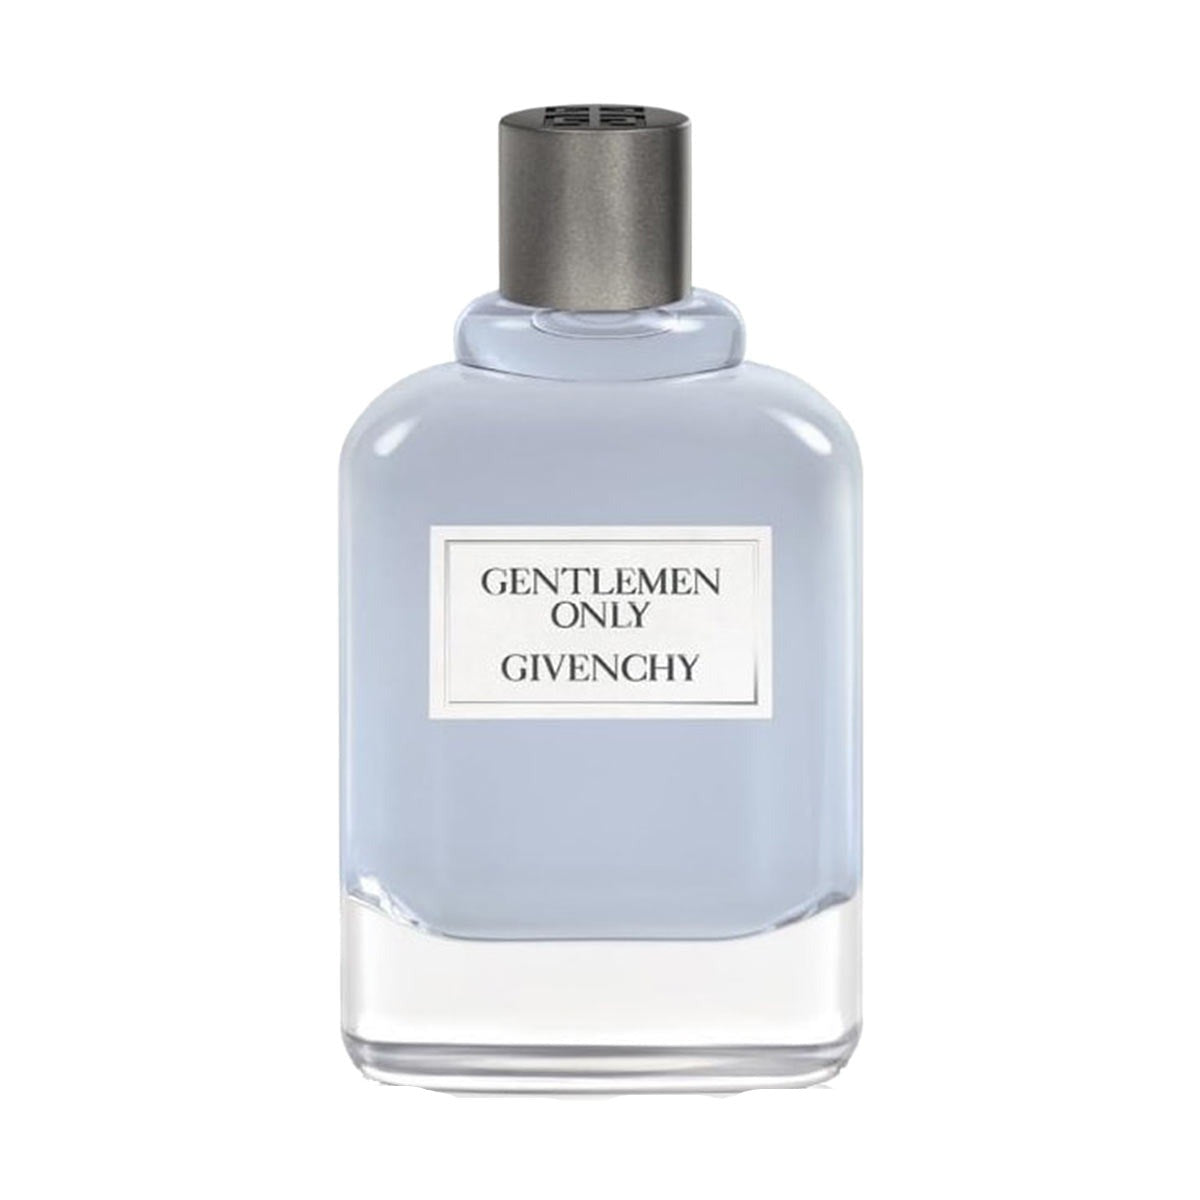 Parfums Gentlemen Only Givenchy de la marque Givenchy pour homme 100 ml